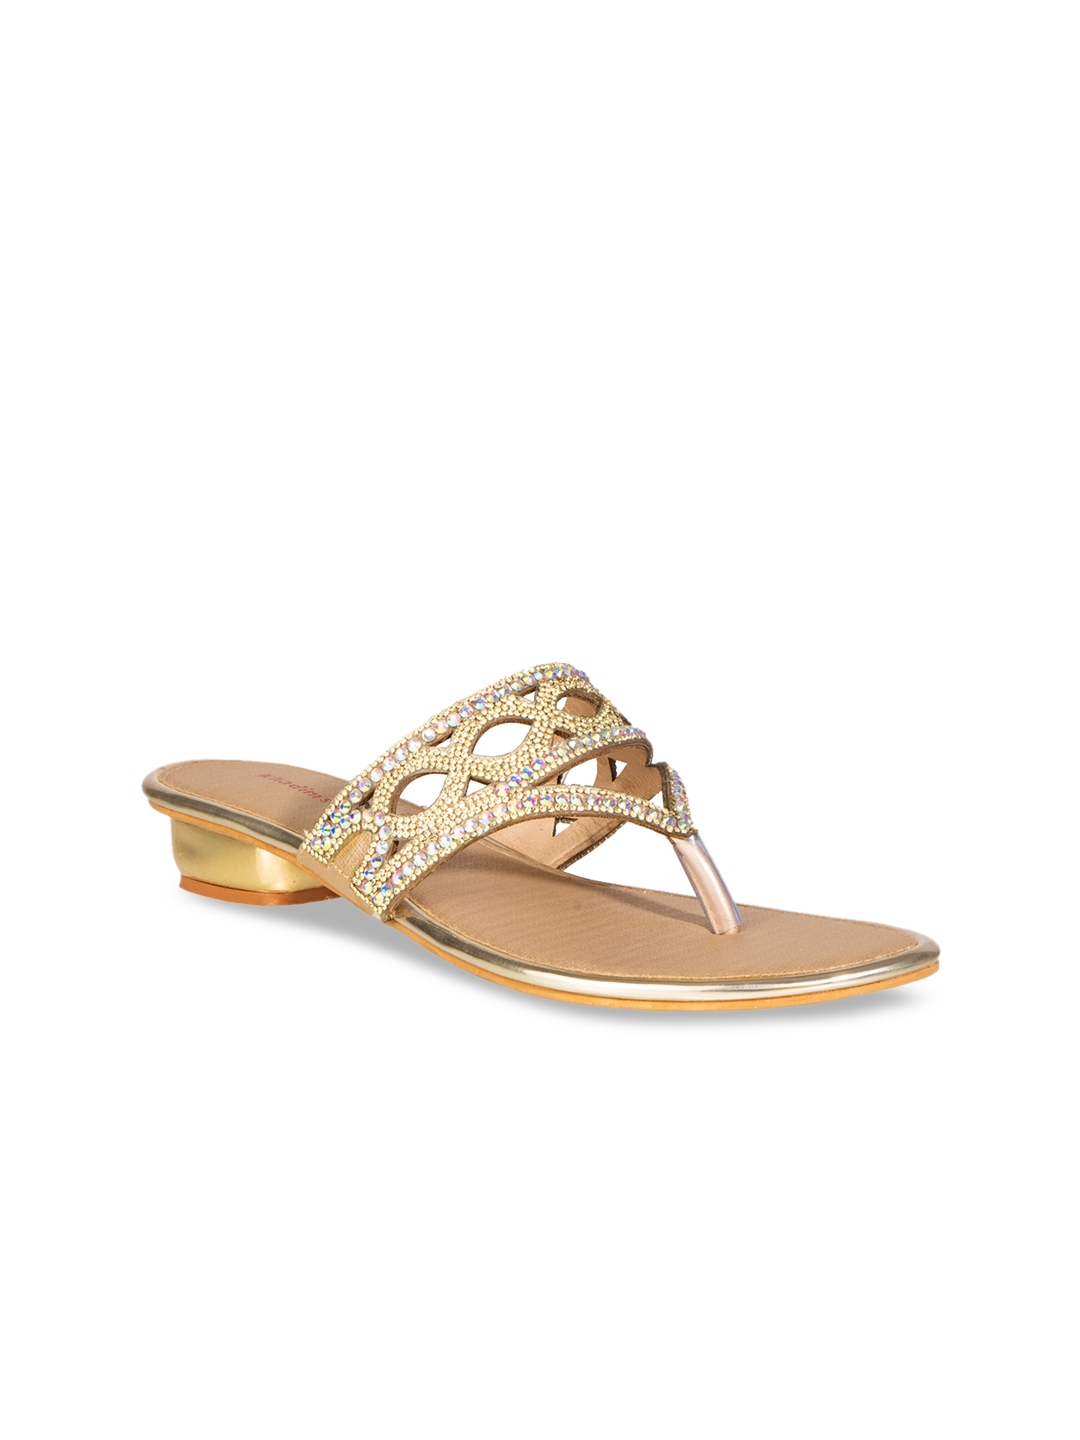 Buy Khadims Women Gold Toned Embellished Block Heels - Heels for Women ...